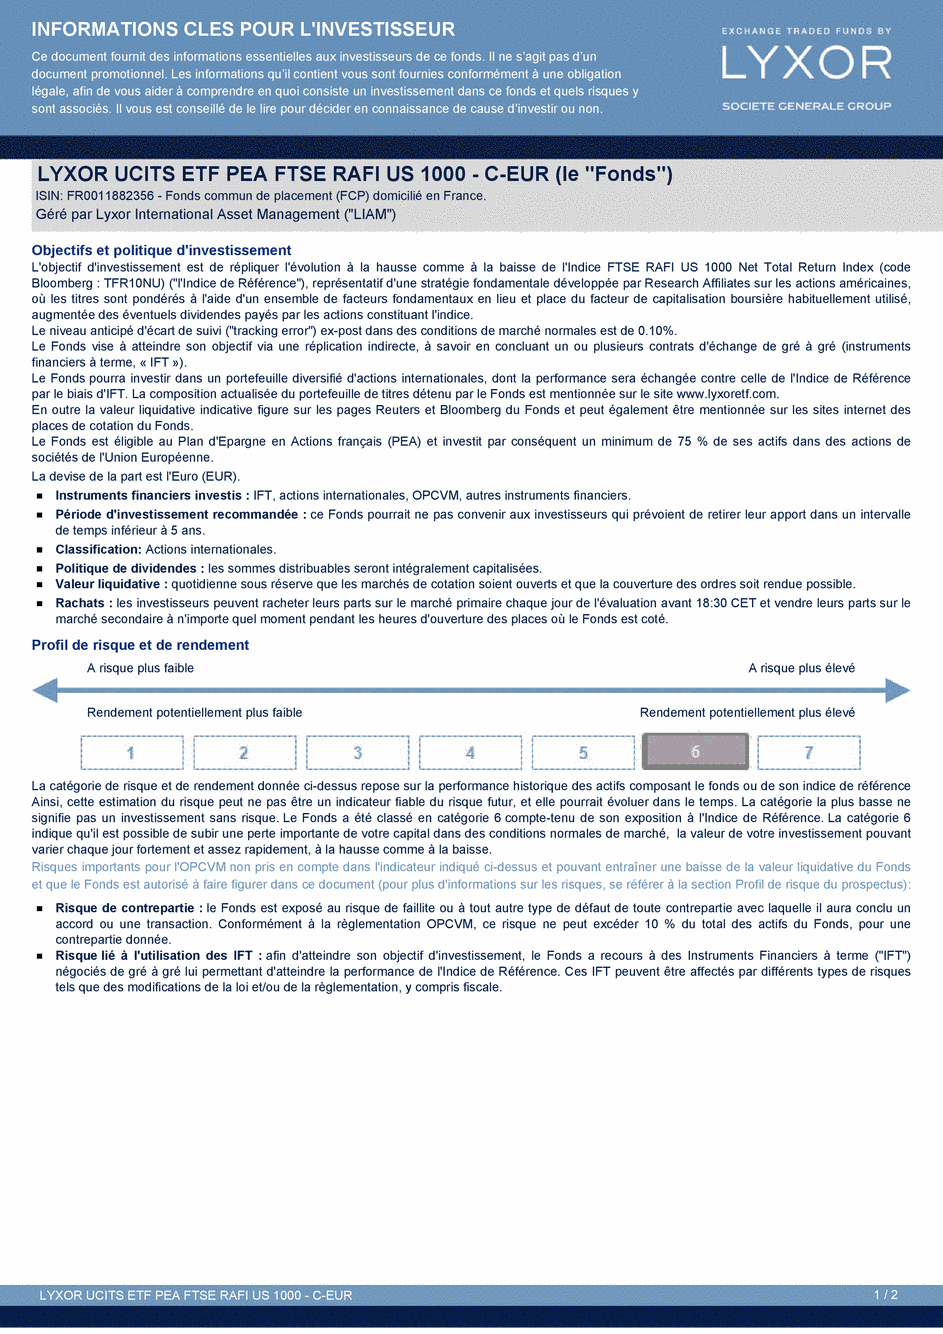 DICI LYXOR UCITS ETF PEA FTSE RAFI US 1000 C-EUR - 03/02/2016 - Français